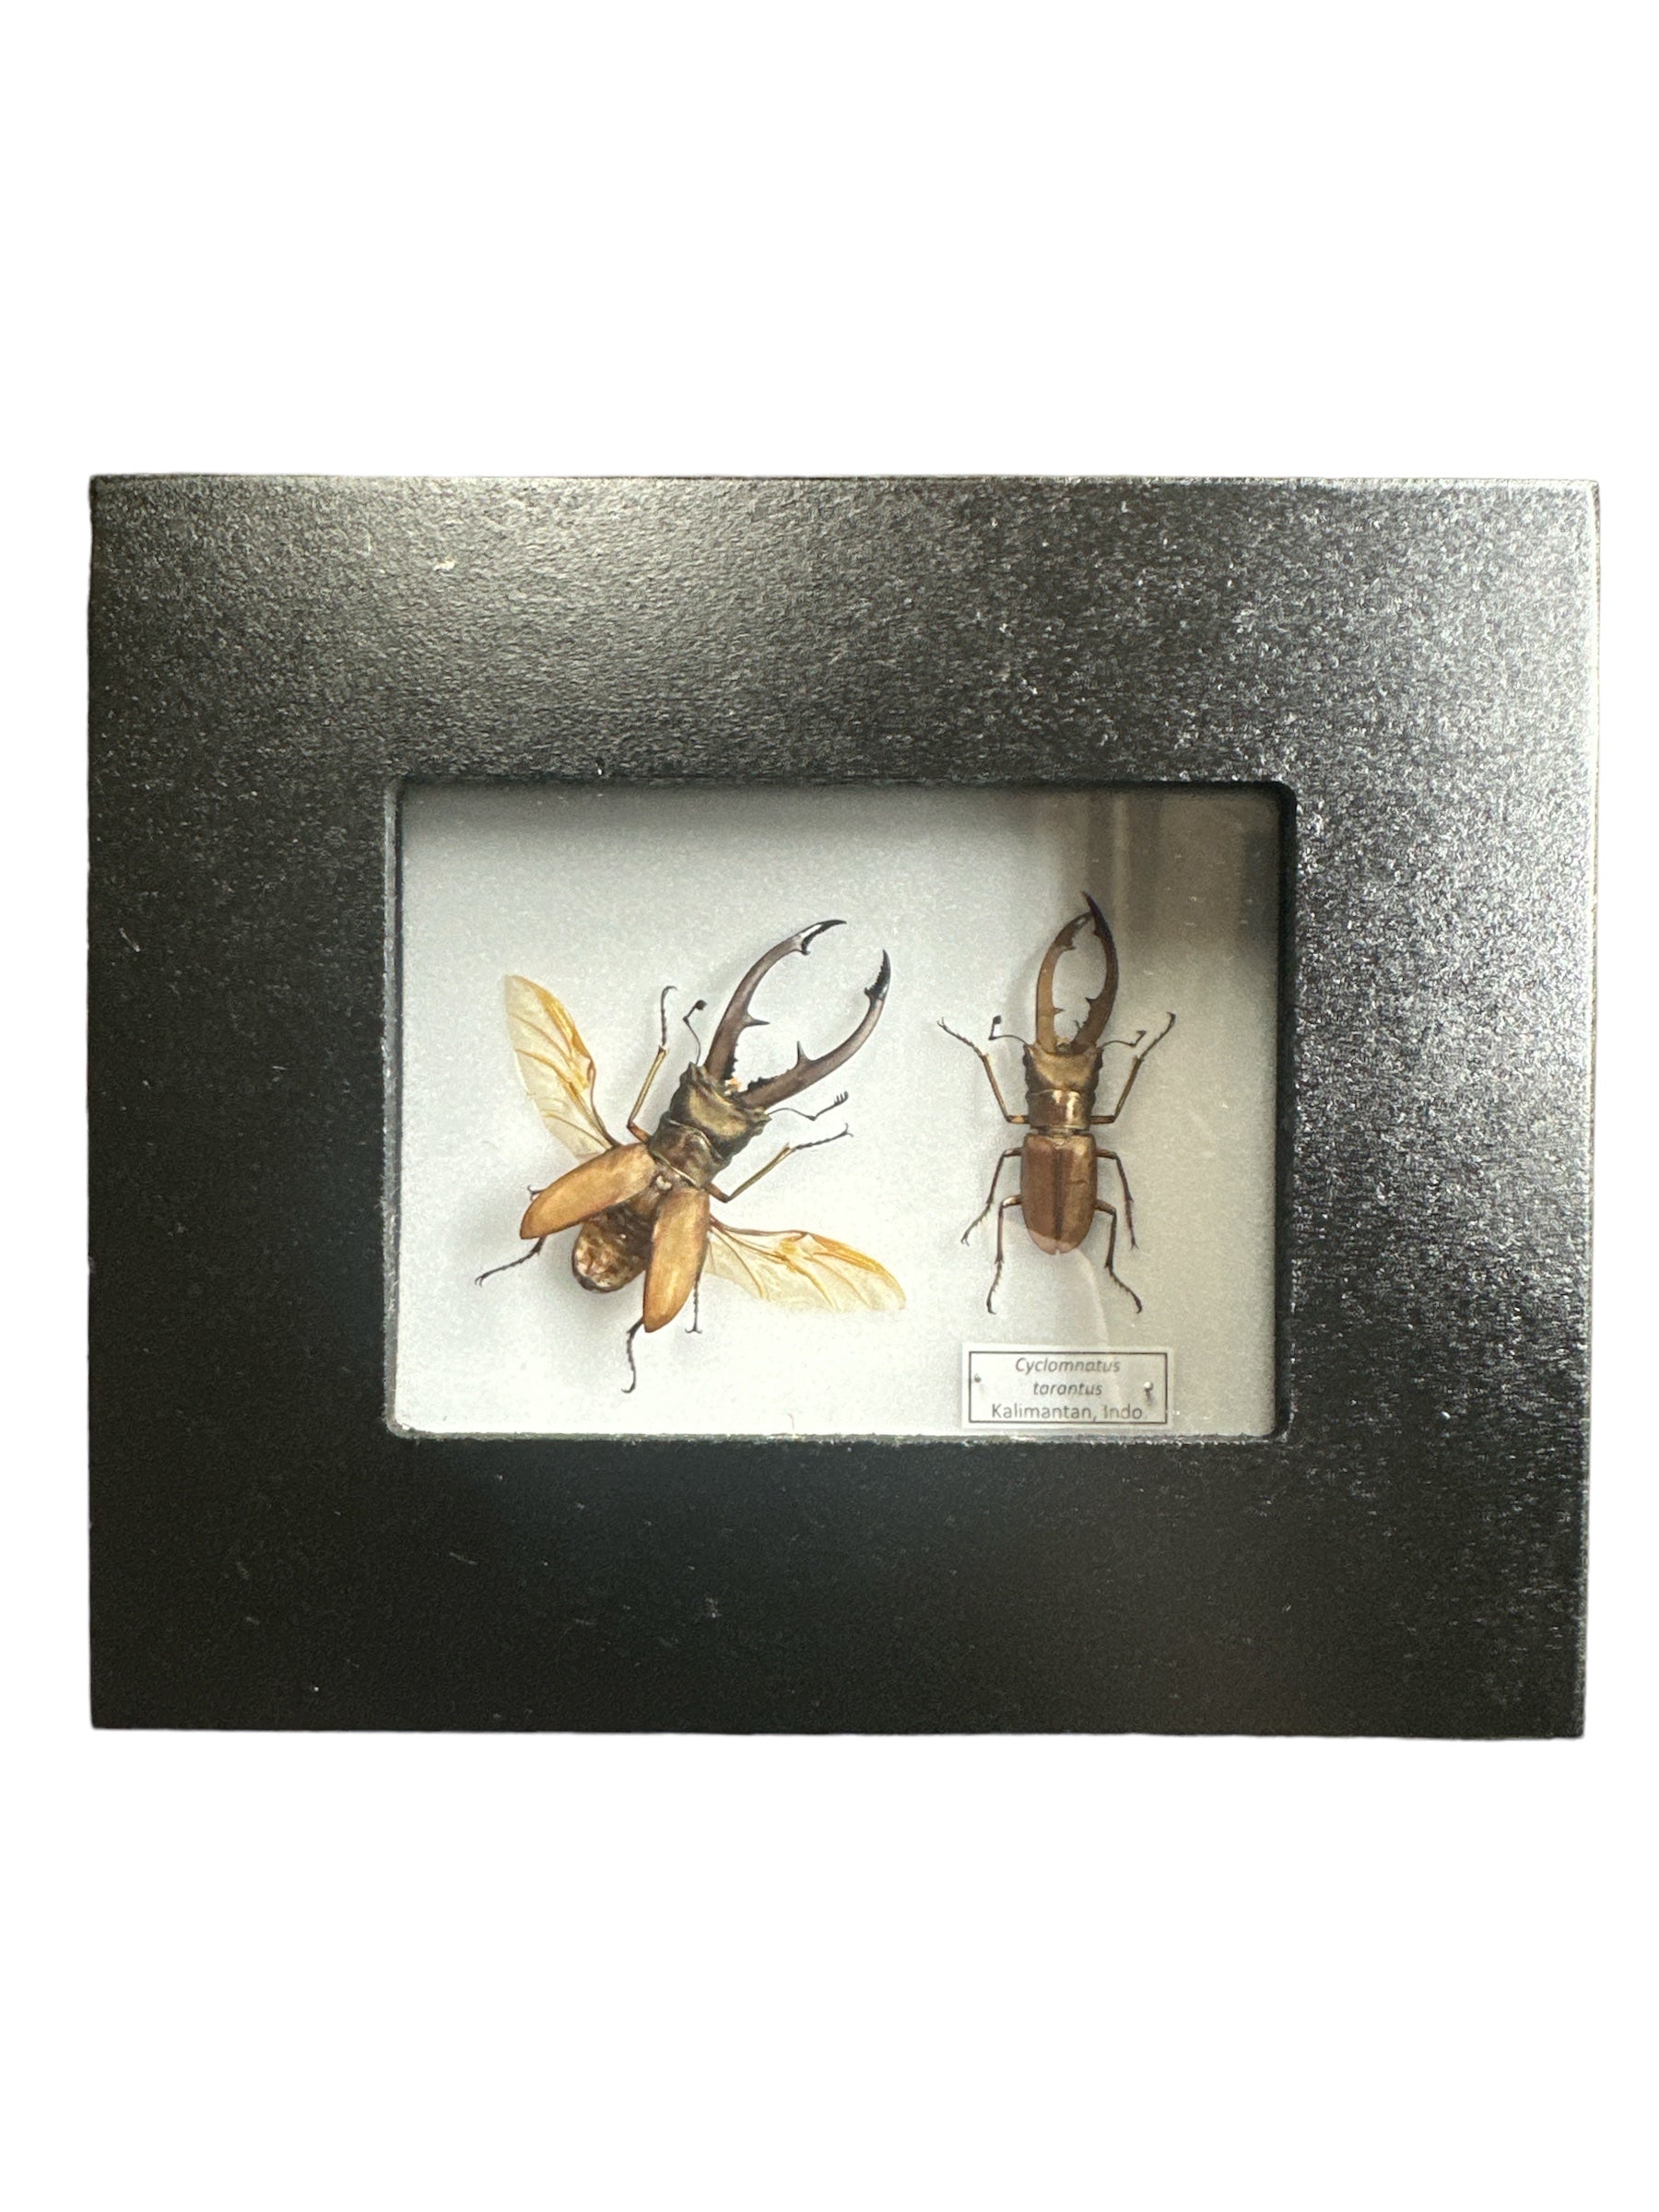 Longjaw Stag Beetle X2 (Cyclomnatus tarantus) - 2x3" Frame